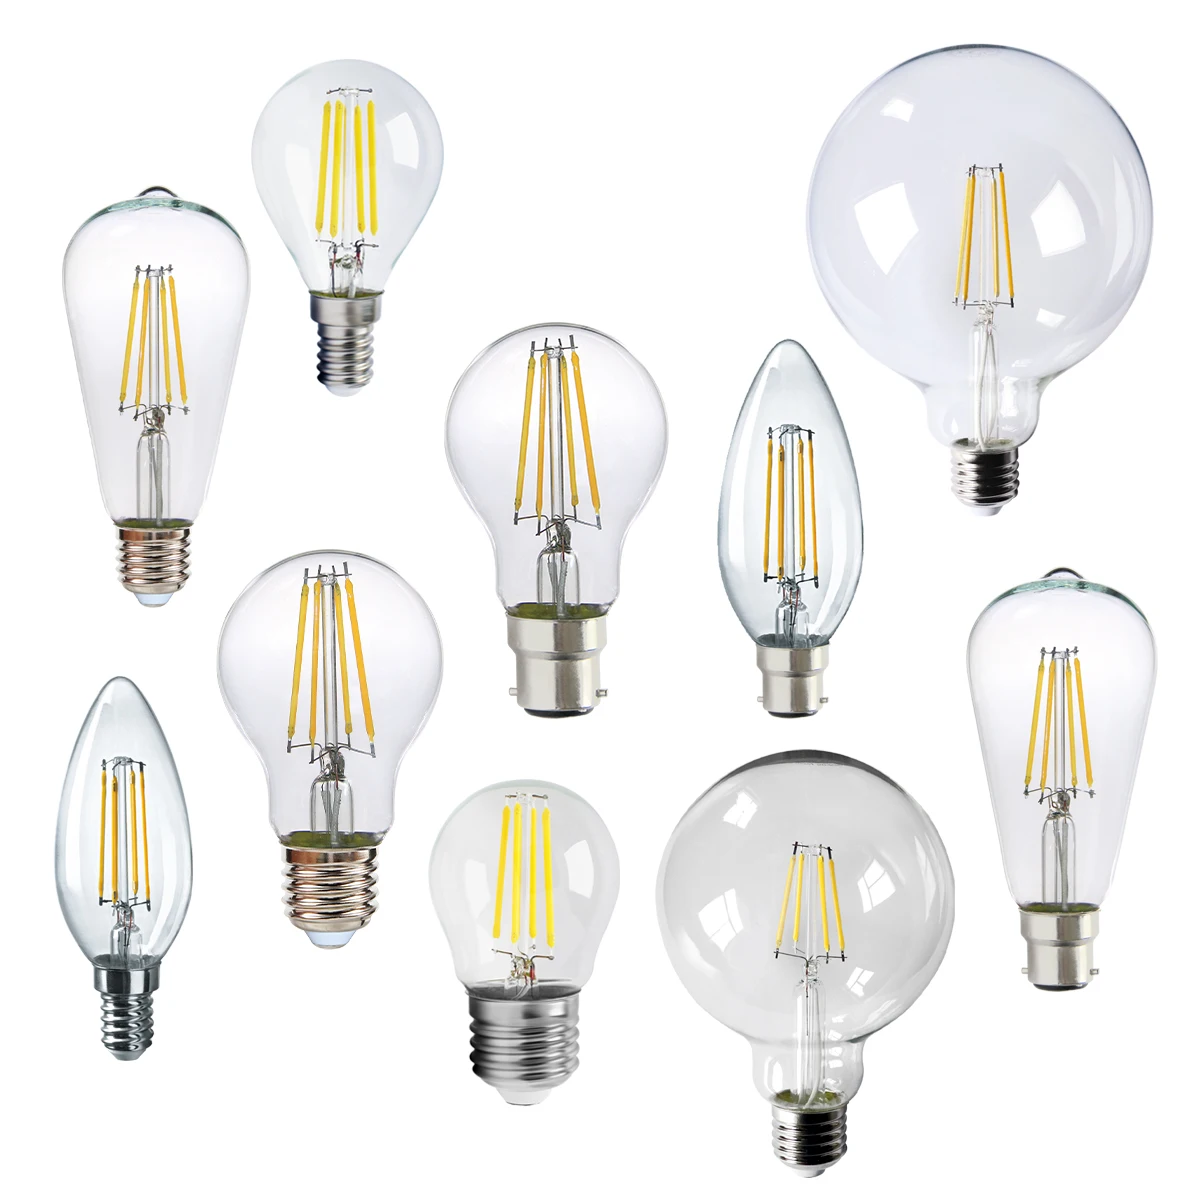 

Retro Edison LED Filament Bulb E27 E14 B22 Lamp AC220V Light Bulb C35 G45 A60 ST64 G80 G95 G125 Glass Bulb Vintage Candle Light